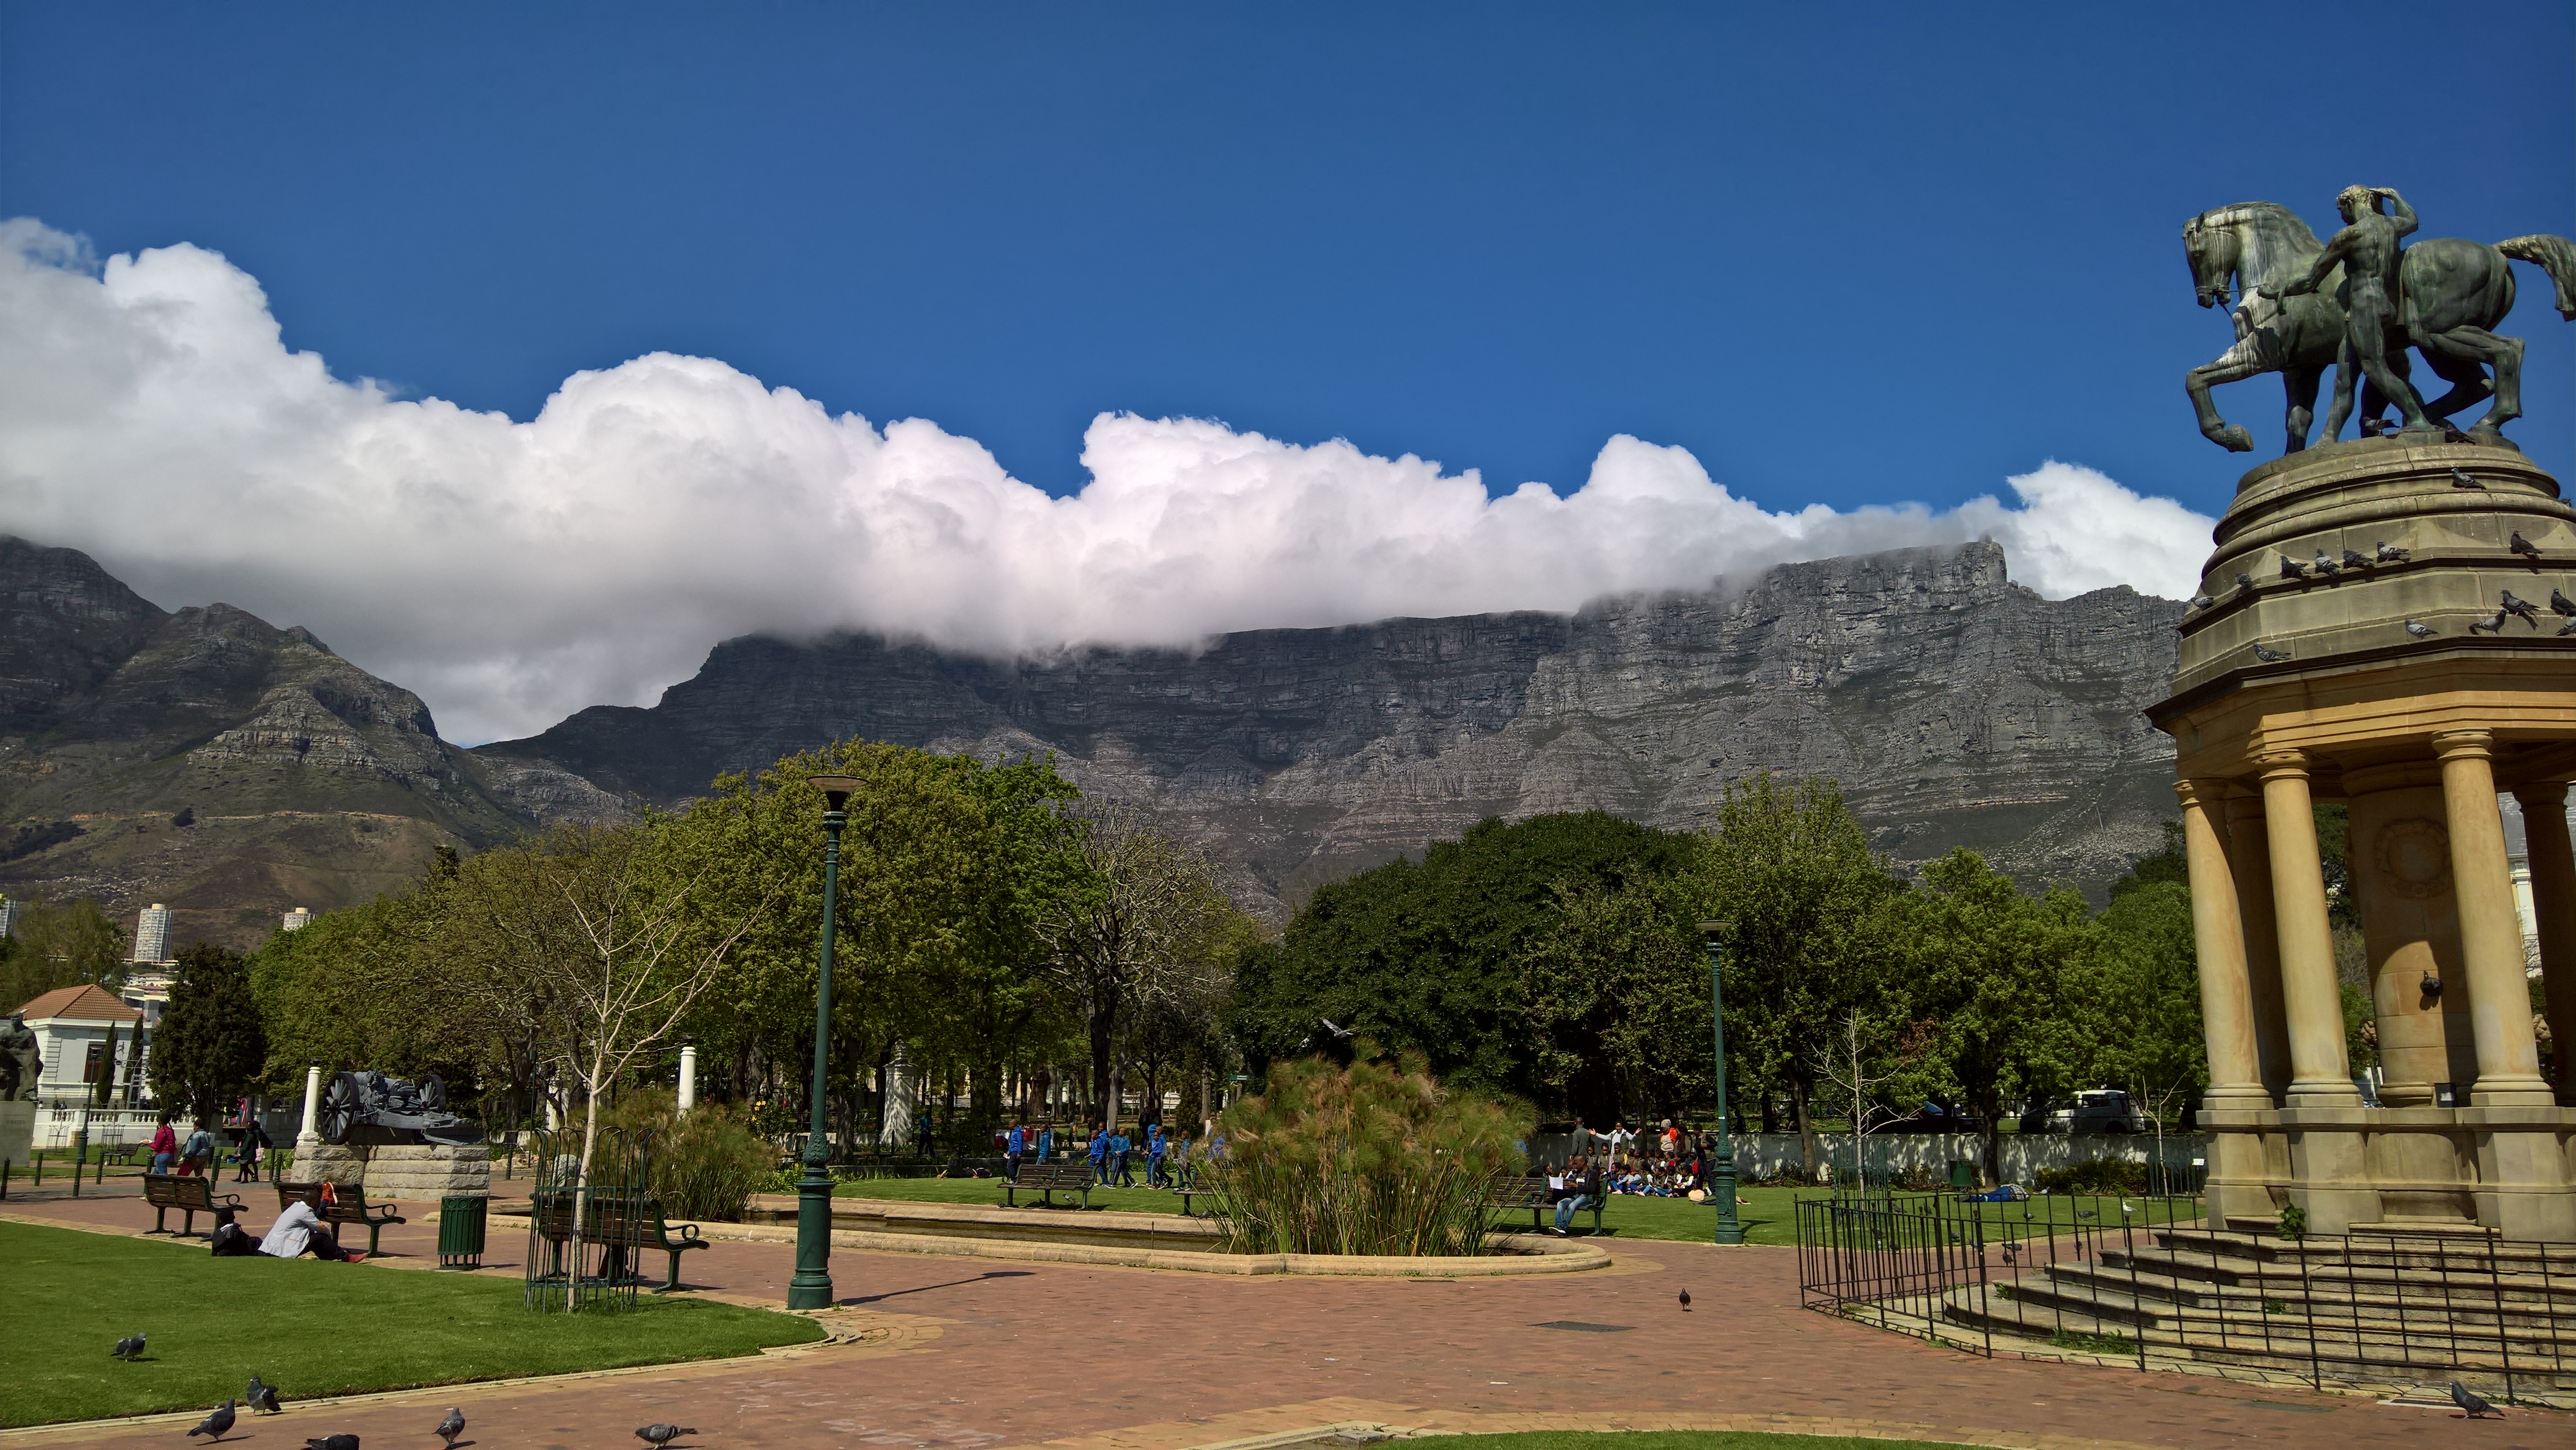 La partie « parc public » de Company’s gardens, surmontée de Table Mountain, comme souvent encapuchonnée de nuages